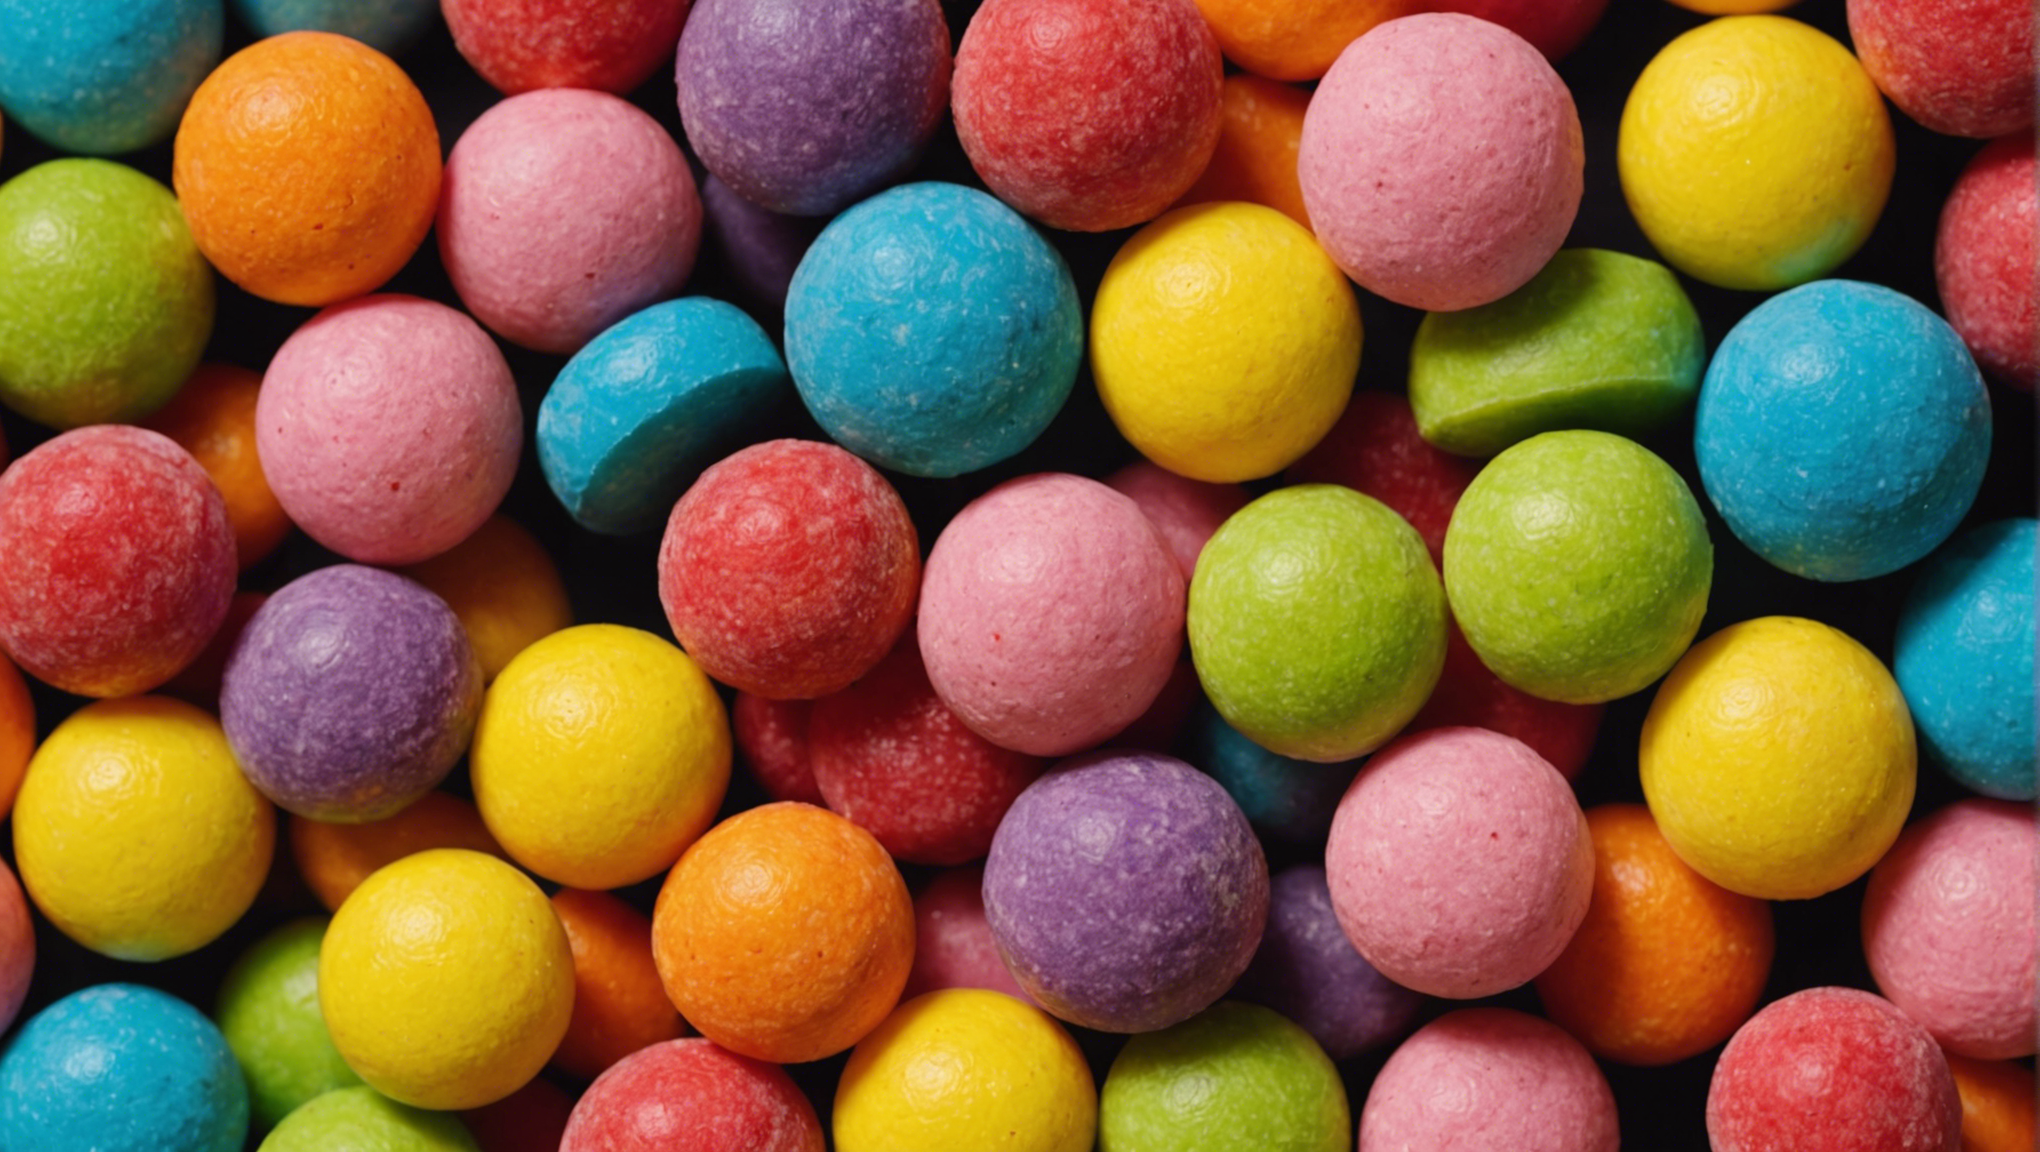 découvrez comment fabriquer facilement des bonbons naturels, sans colorants ni additifs, avec seulement 3 ingrédients.